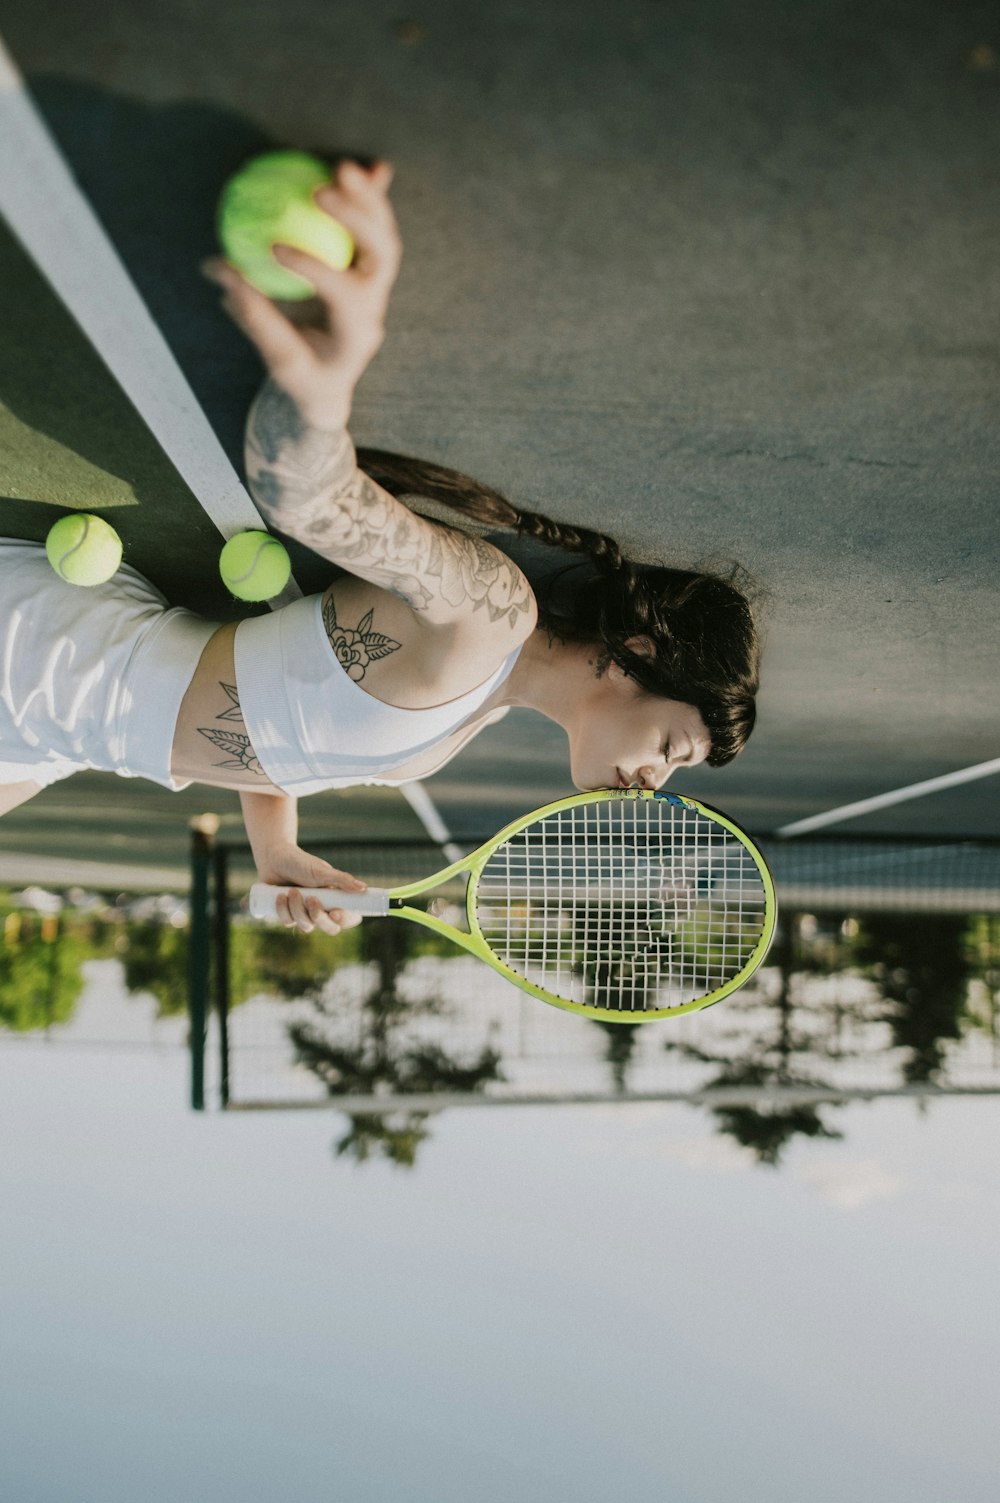 テニスラケットとテニスボールを持つ女性